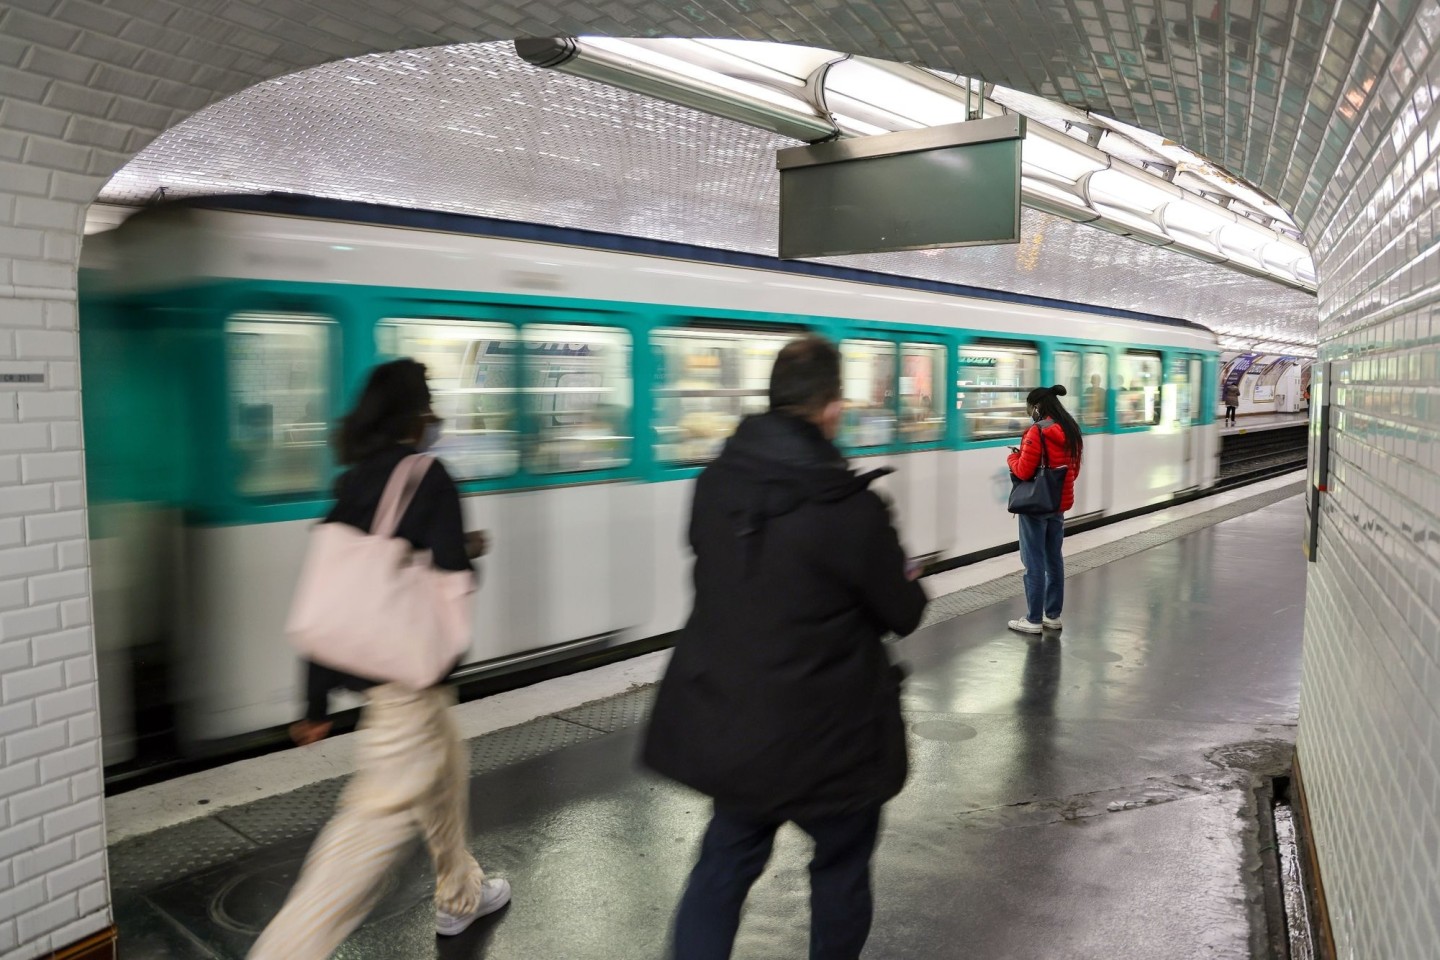 Fahrgäste benutzen eine Pariser Metro - kürzlich ist eine Frau an der Tür einer U-Bahn hängengeblieben und gestorben.